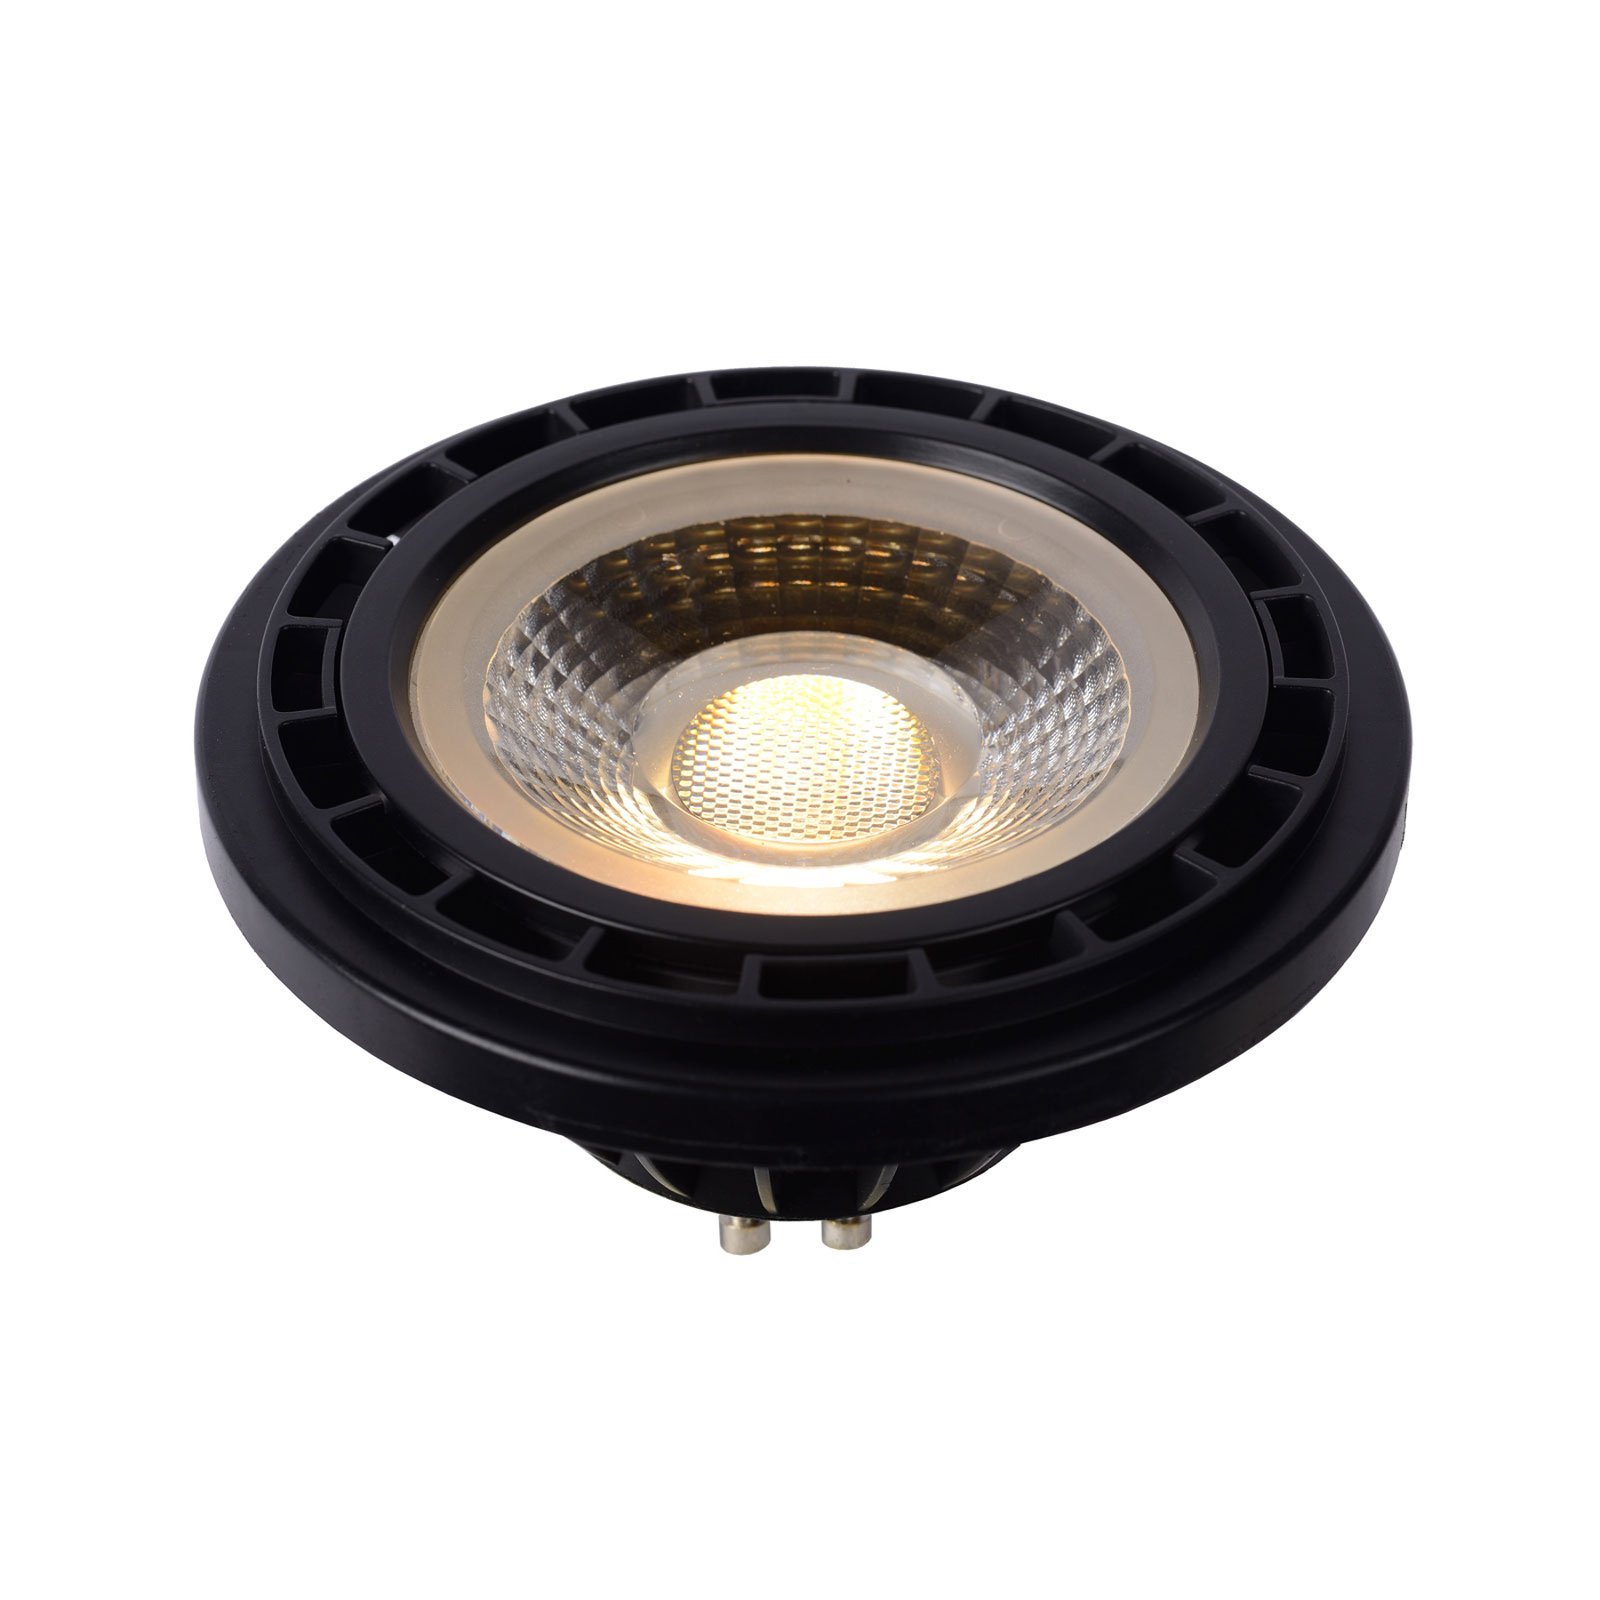 LED-Reflektor GU10 12W 3000K dim to warm, schwarz